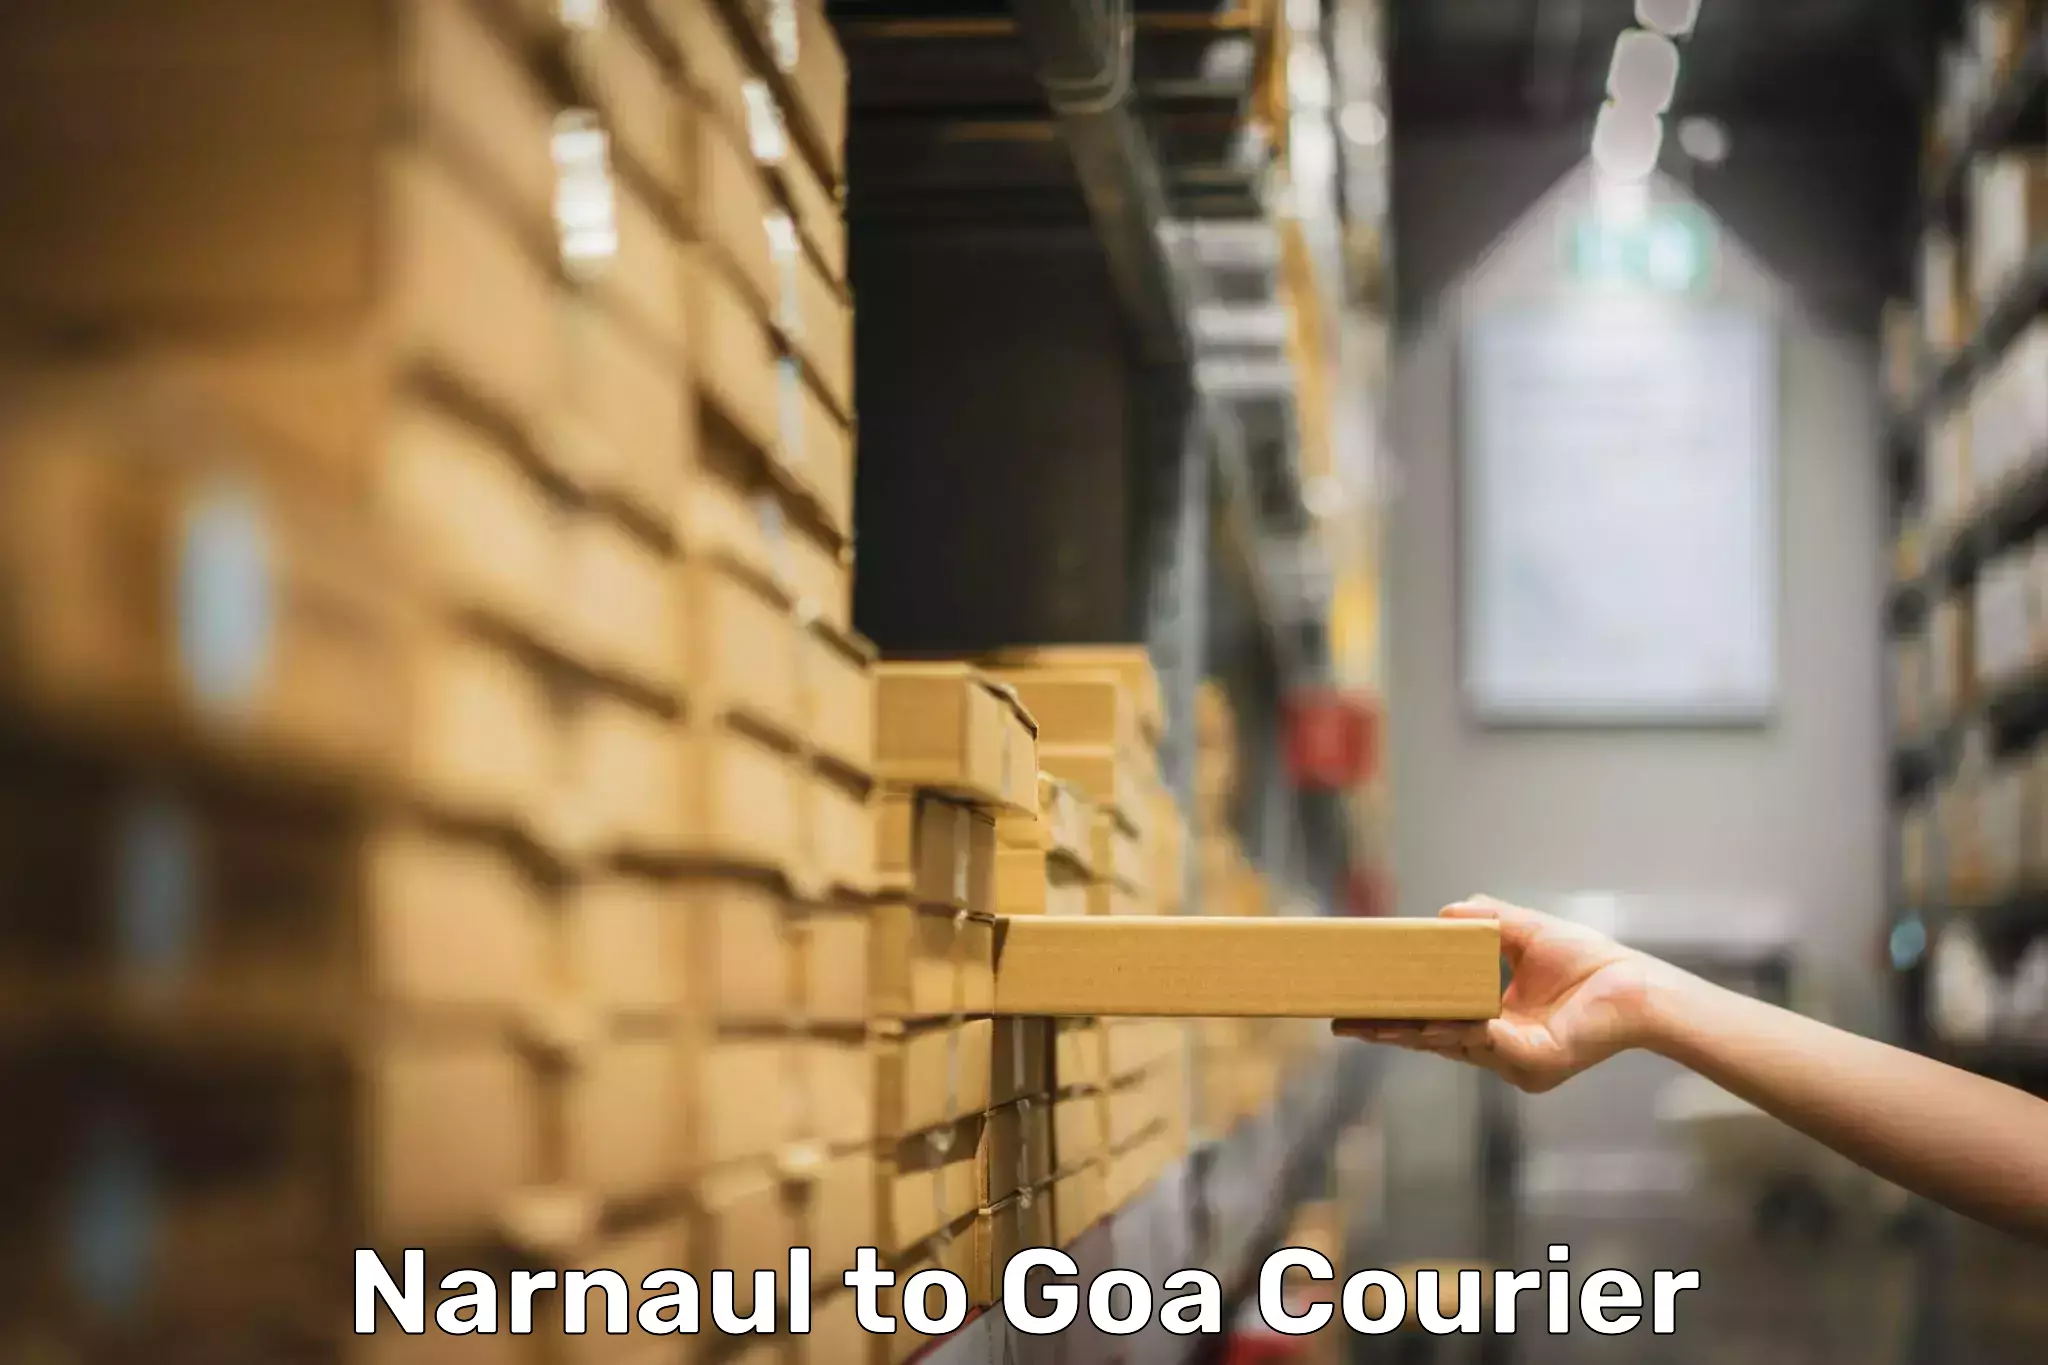 Emergency baggage service Narnaul to IIT Goa